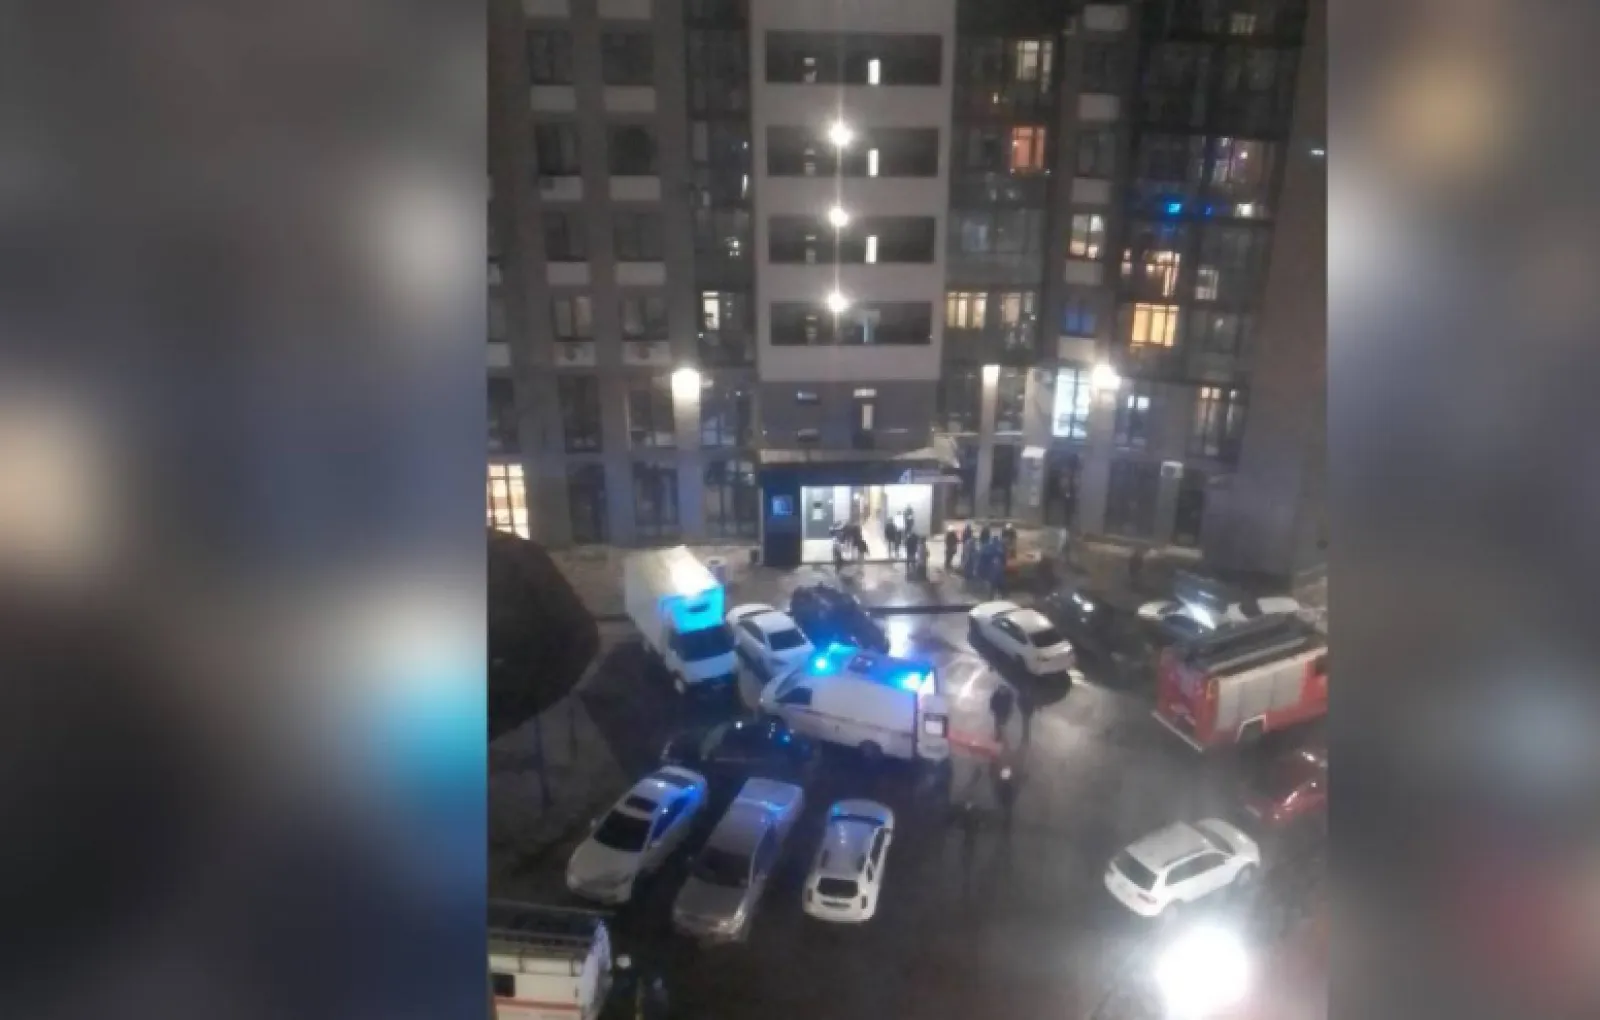 Мужчина 19 этаж. В Воронеже мужчина выпал с 19 этажа и выжил. Фото из окна. Улица из окна. Вид с балкона 12 этажа.